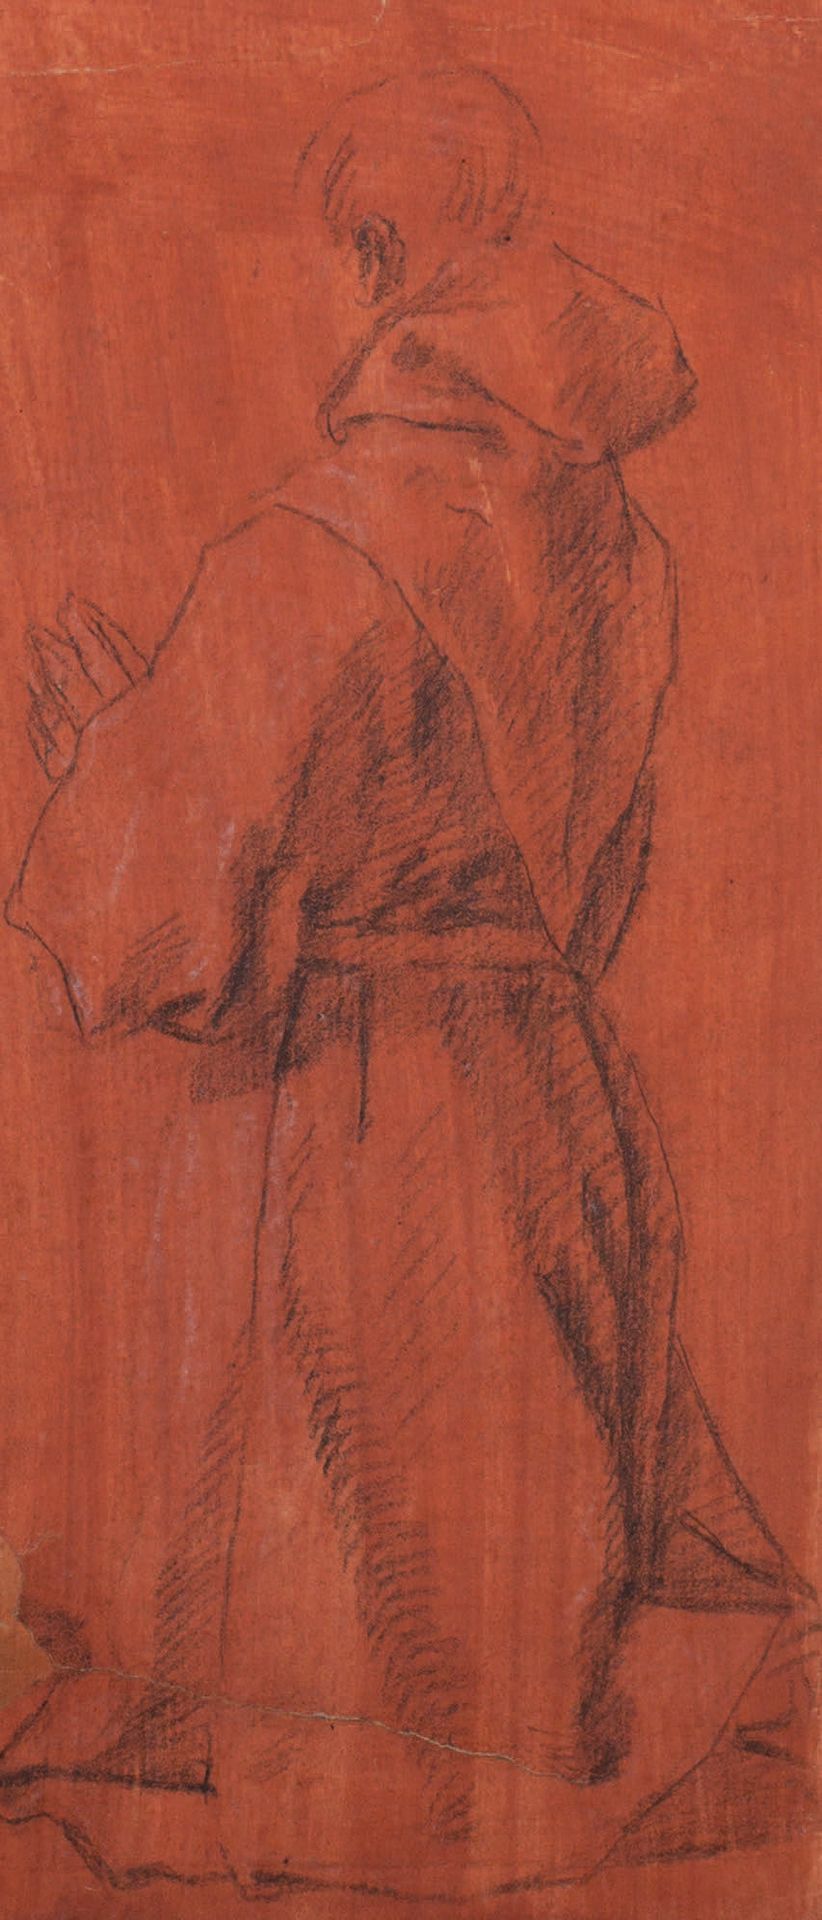 Lazzaro Tavarone (1556-1641) 
Monje arrodillado en oración, visto desde atrás
Pi&hellip;